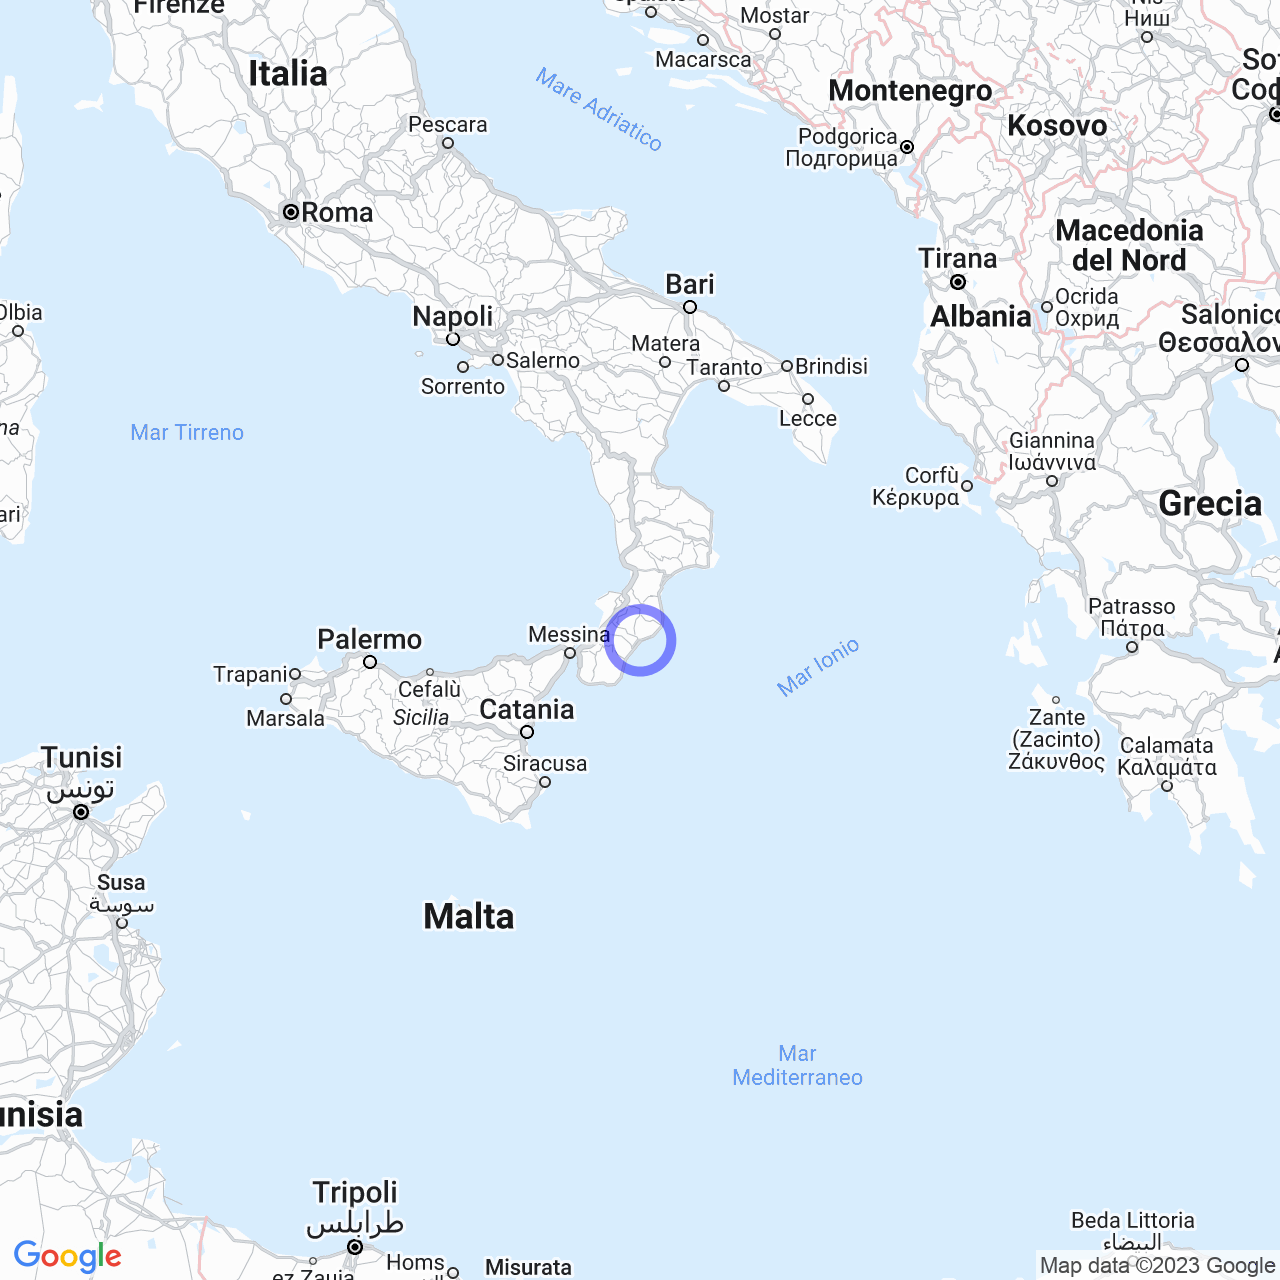 Marina di Gioiosa Ionica: the pearl of Calabria.